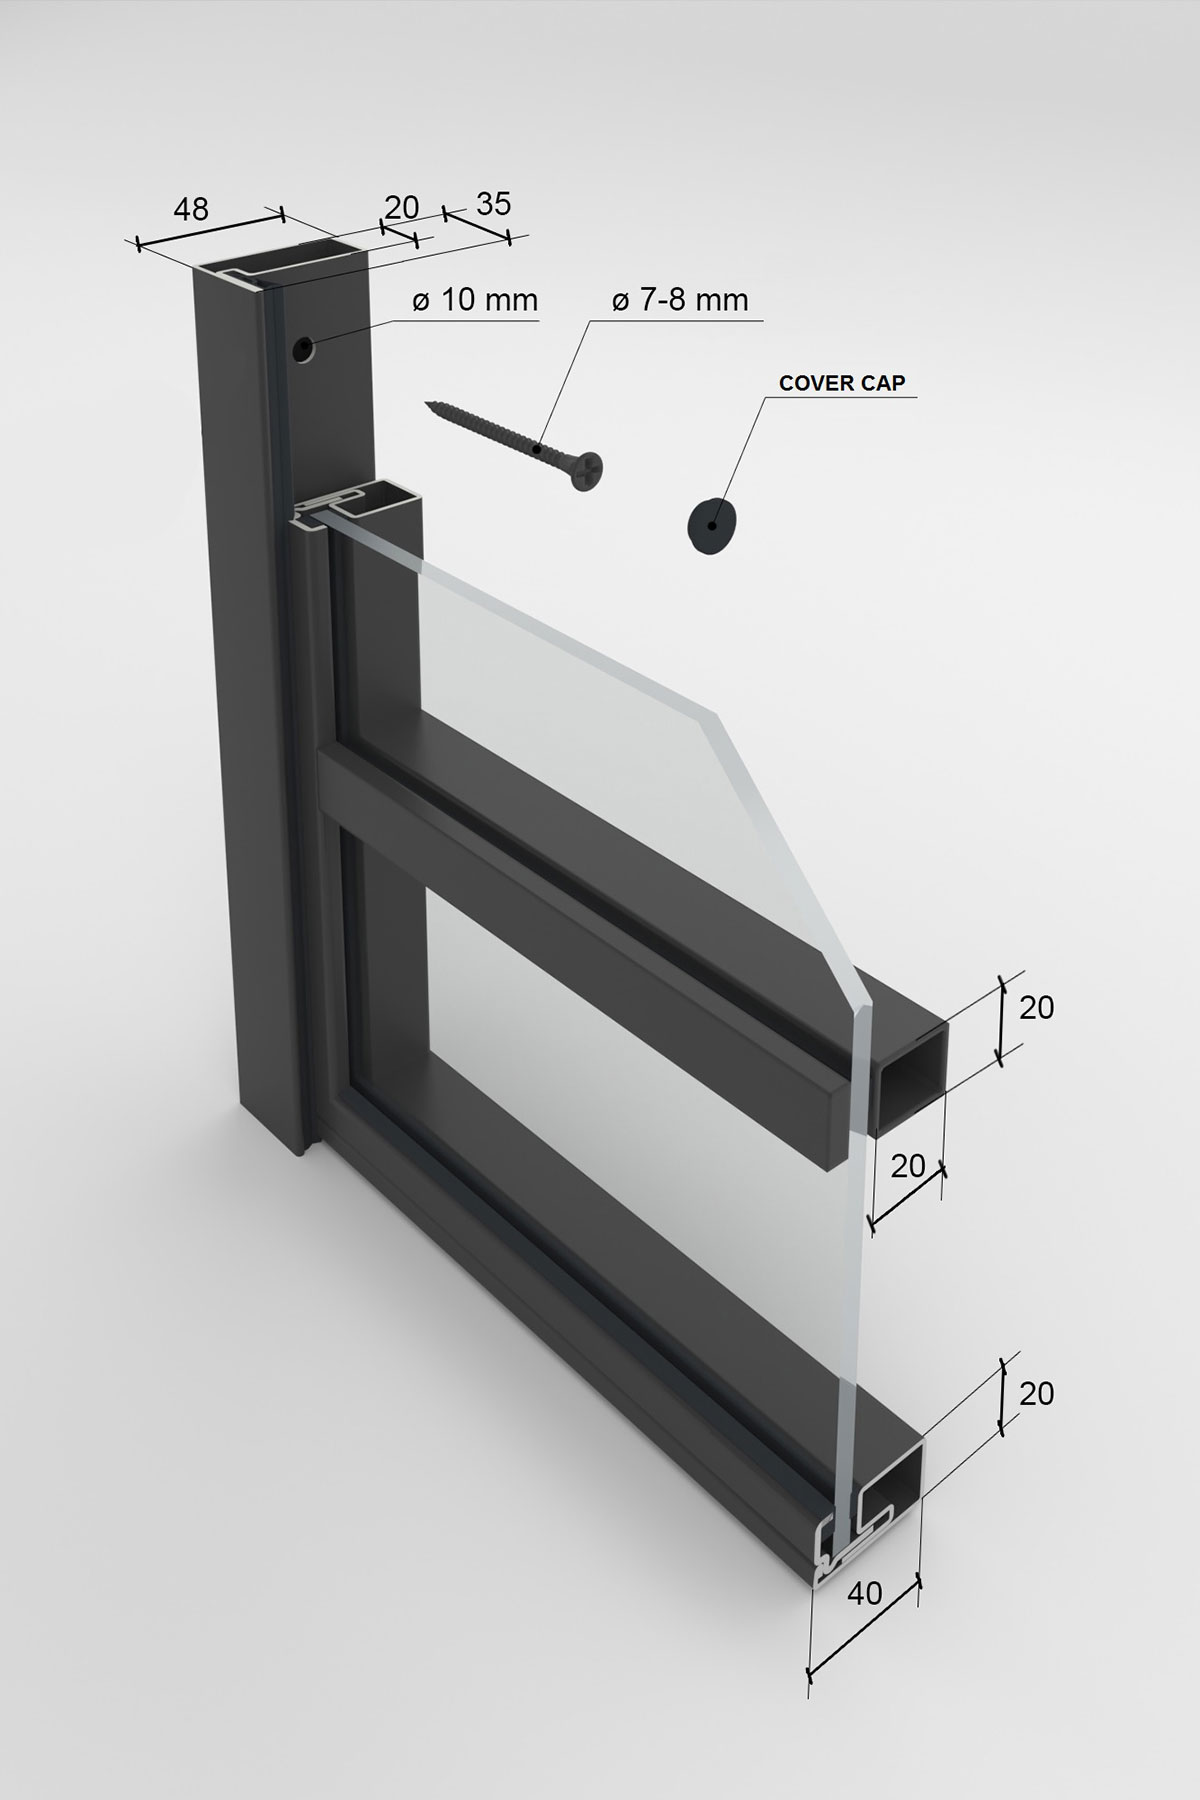 Dimensions of the profiles for Prestige II steel door option